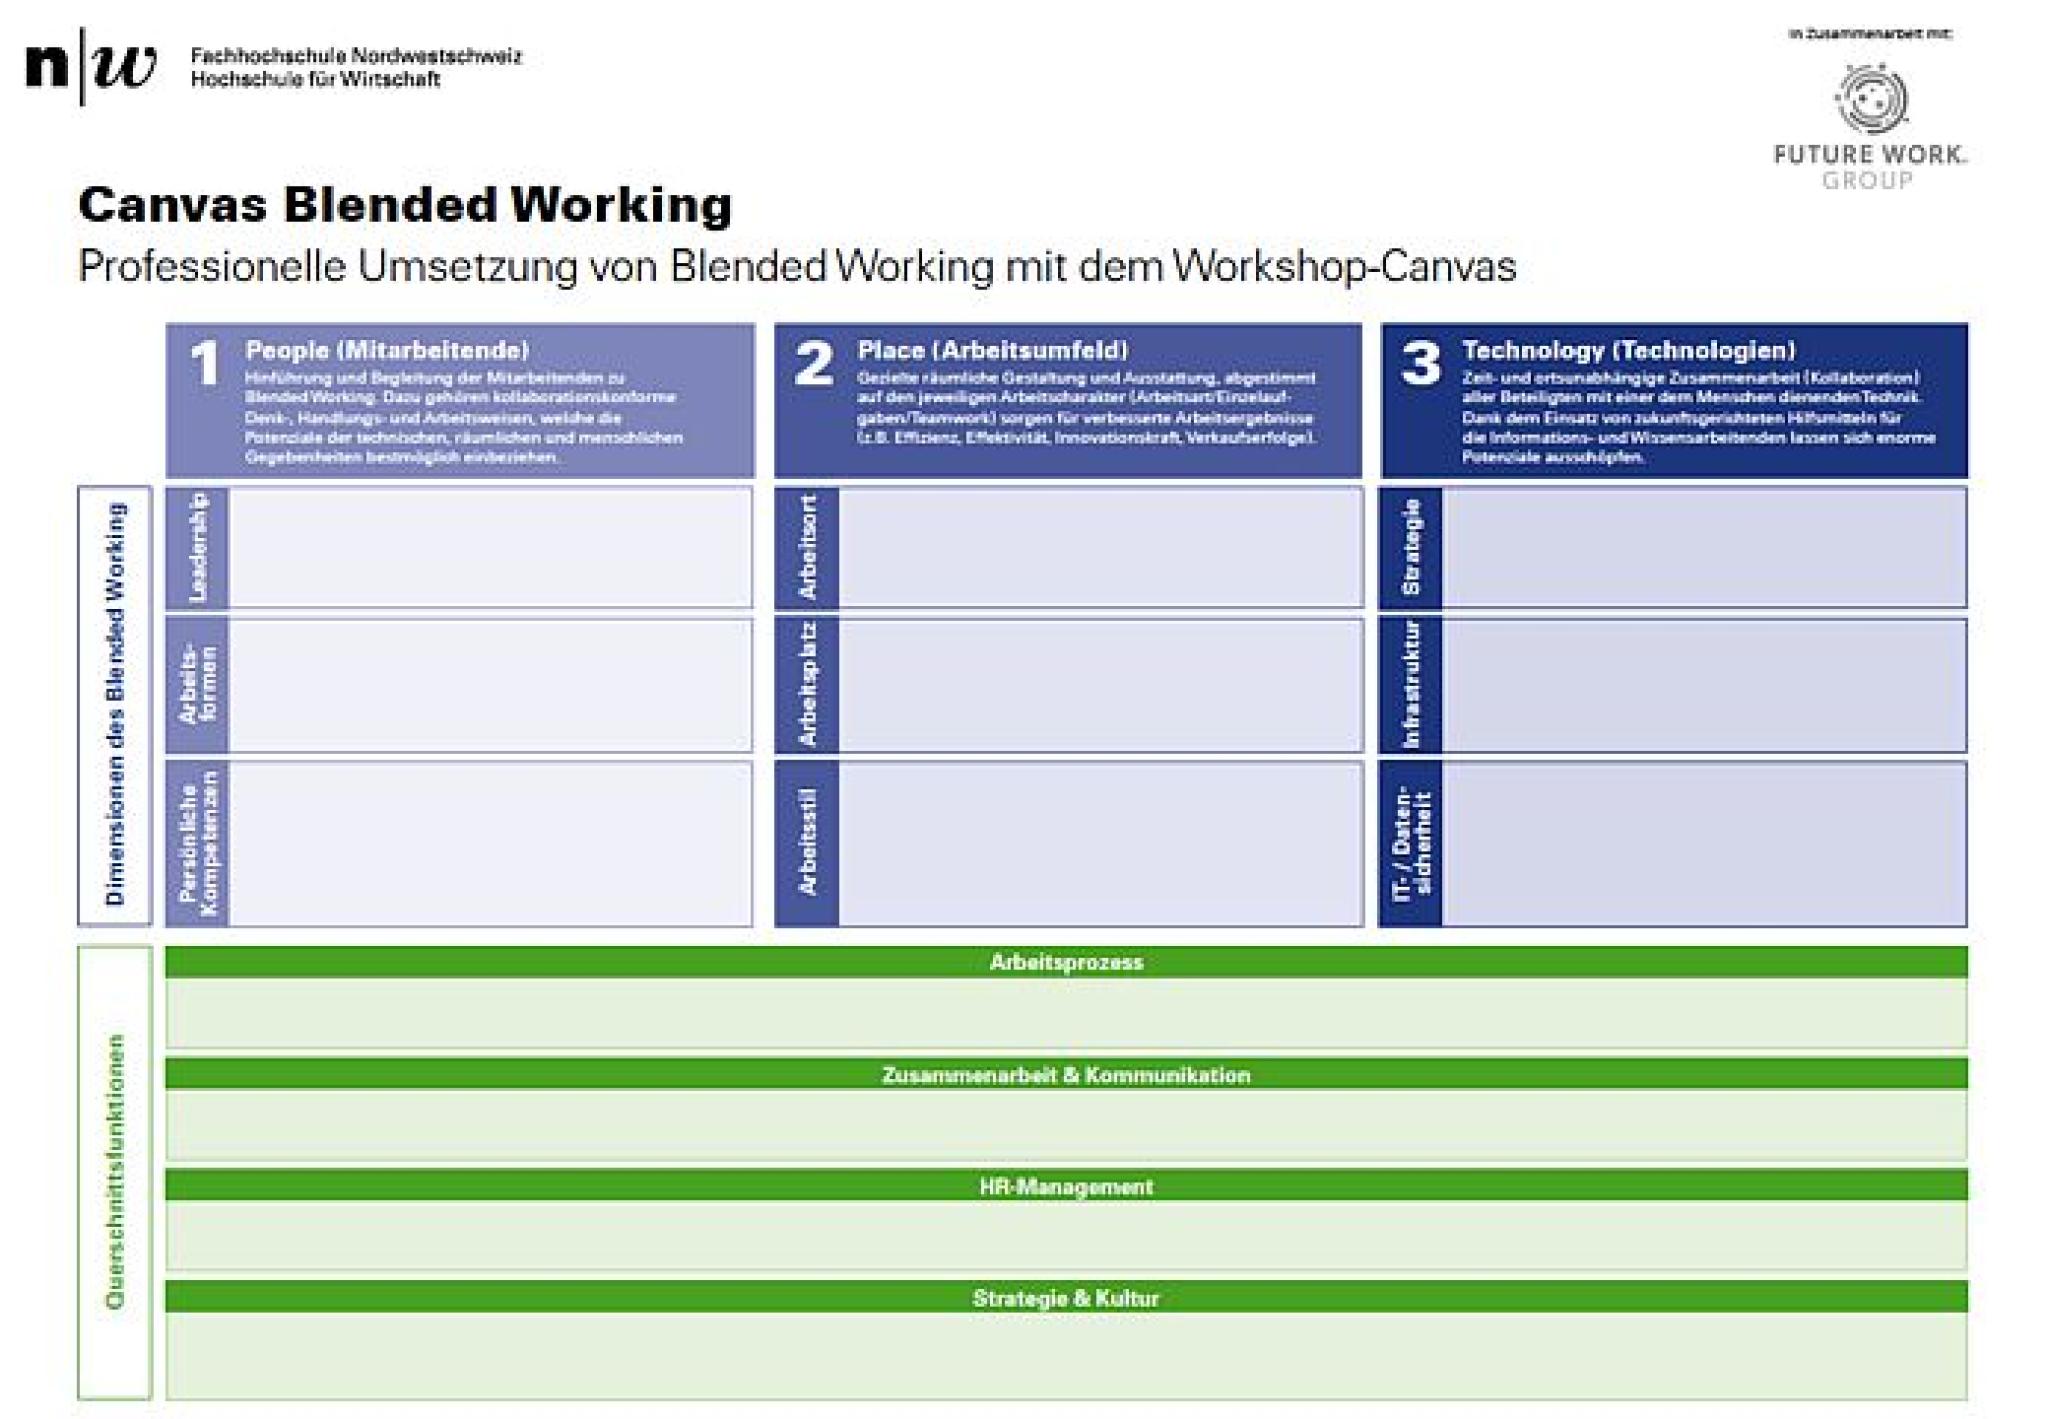 Der Workshop-Canvas zum Thema Arbeitswelt 4.0 und Blended Working